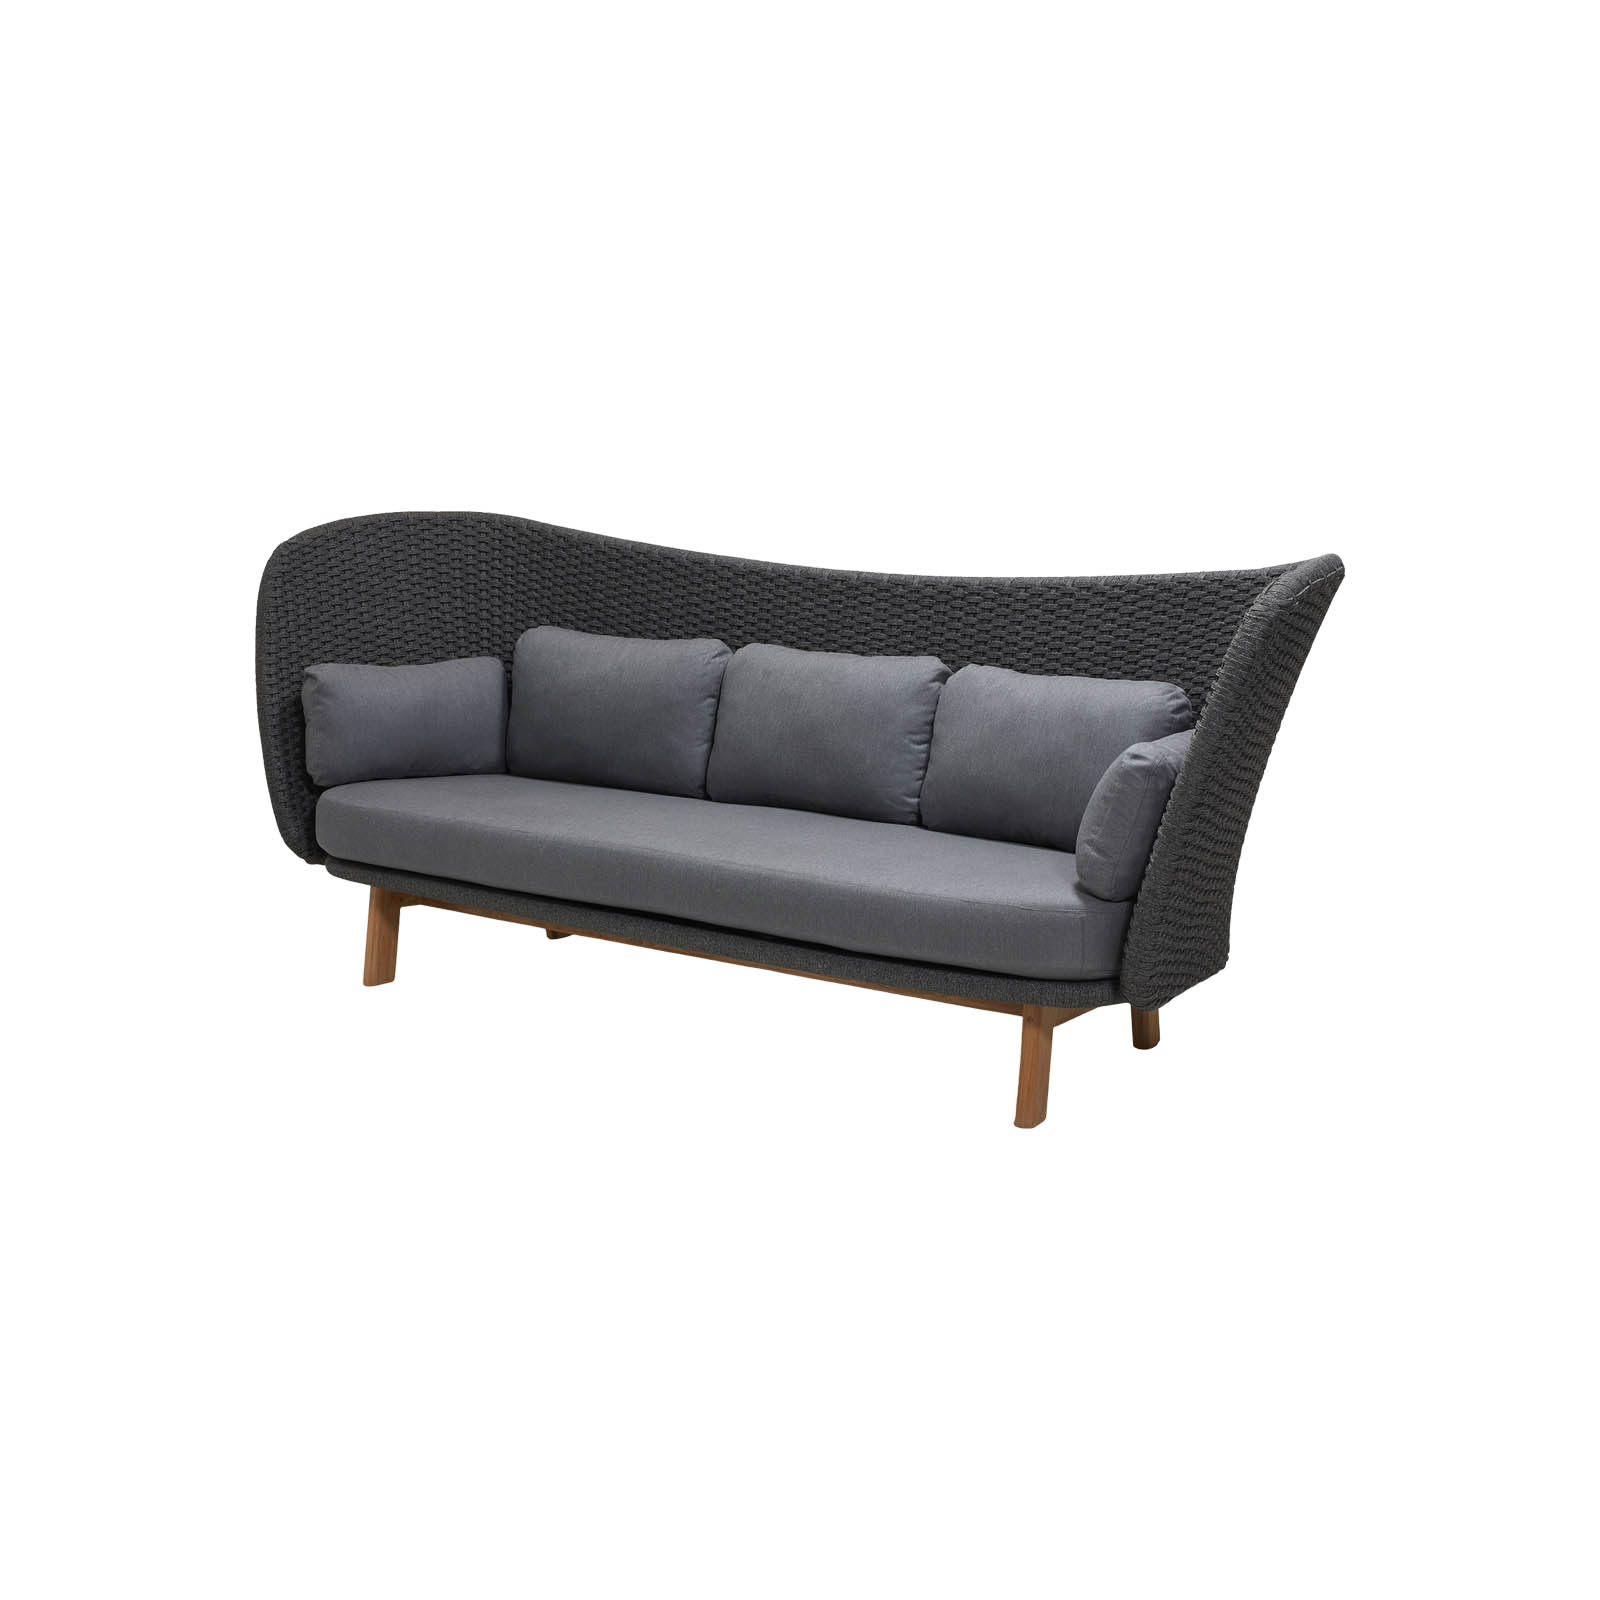 Peacock Wing 3-Sitzer Sofa aus Cane-line Soft Rope in Dark Grey mit Kissen aus Cane-line Natté in Grey